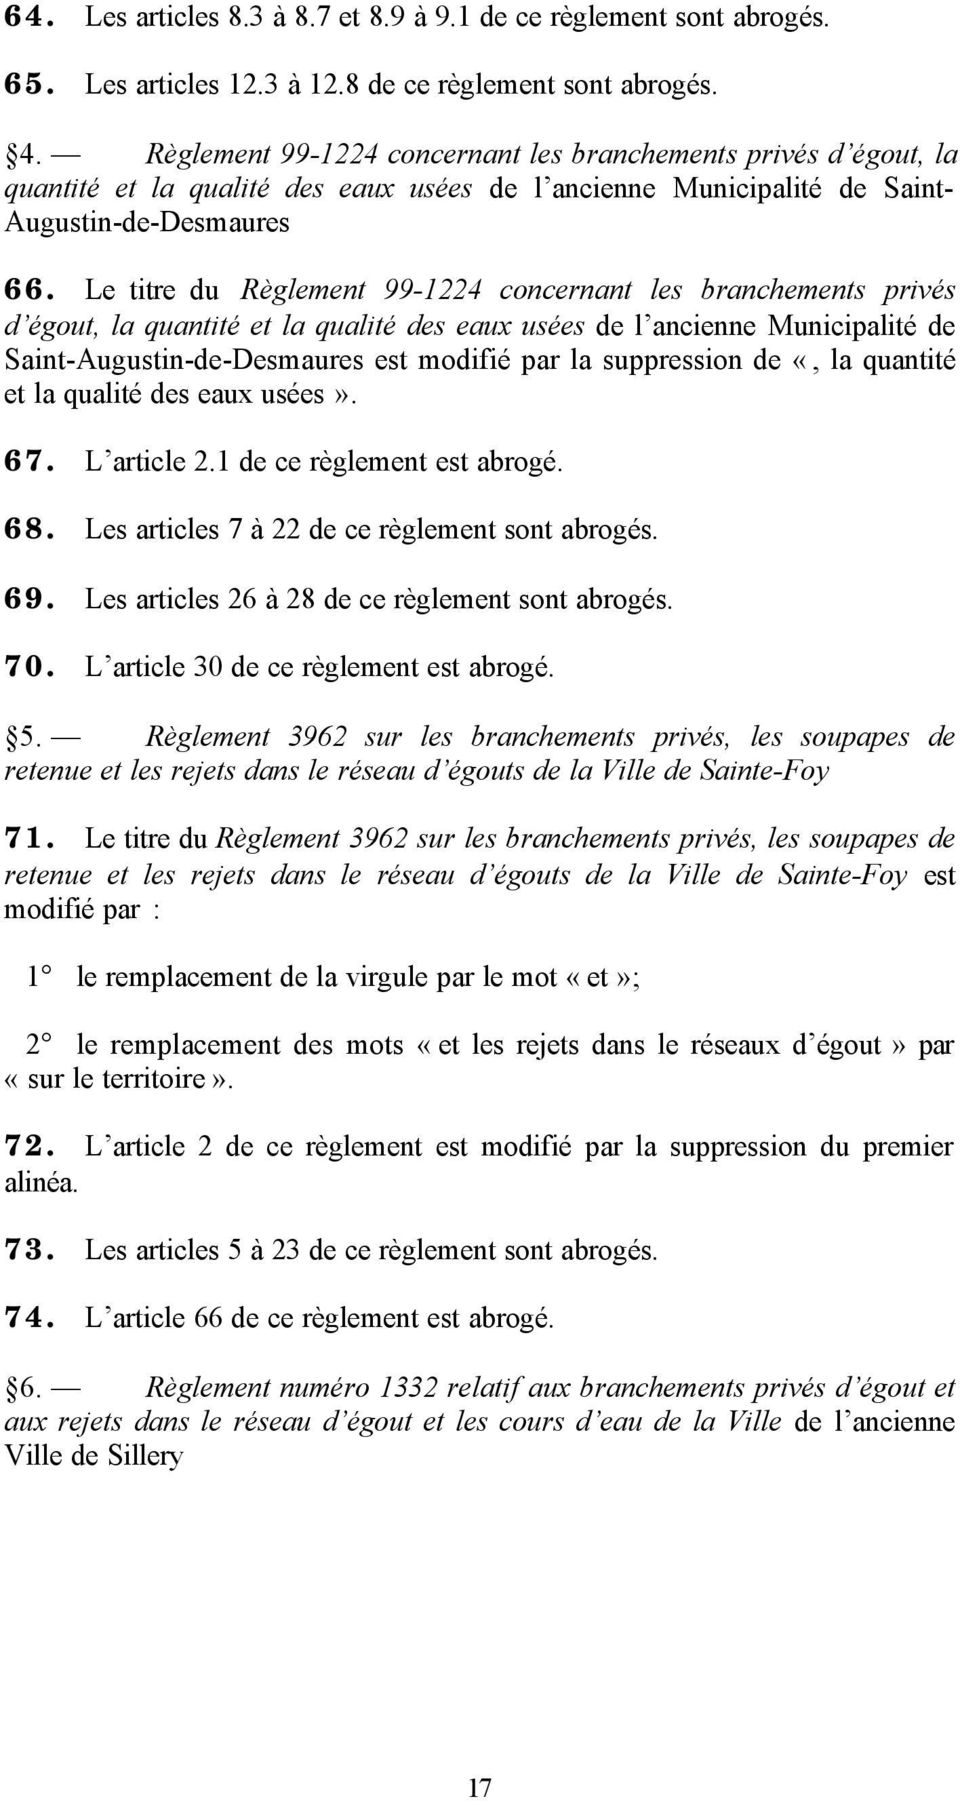 Le titre du Règlement 99-1224 concernant les branchements privés d égout, la quantité et la qualité des eaux usées de l ancienne Municipalité de Saint-Augustin-de-Desmaures est modifié par la